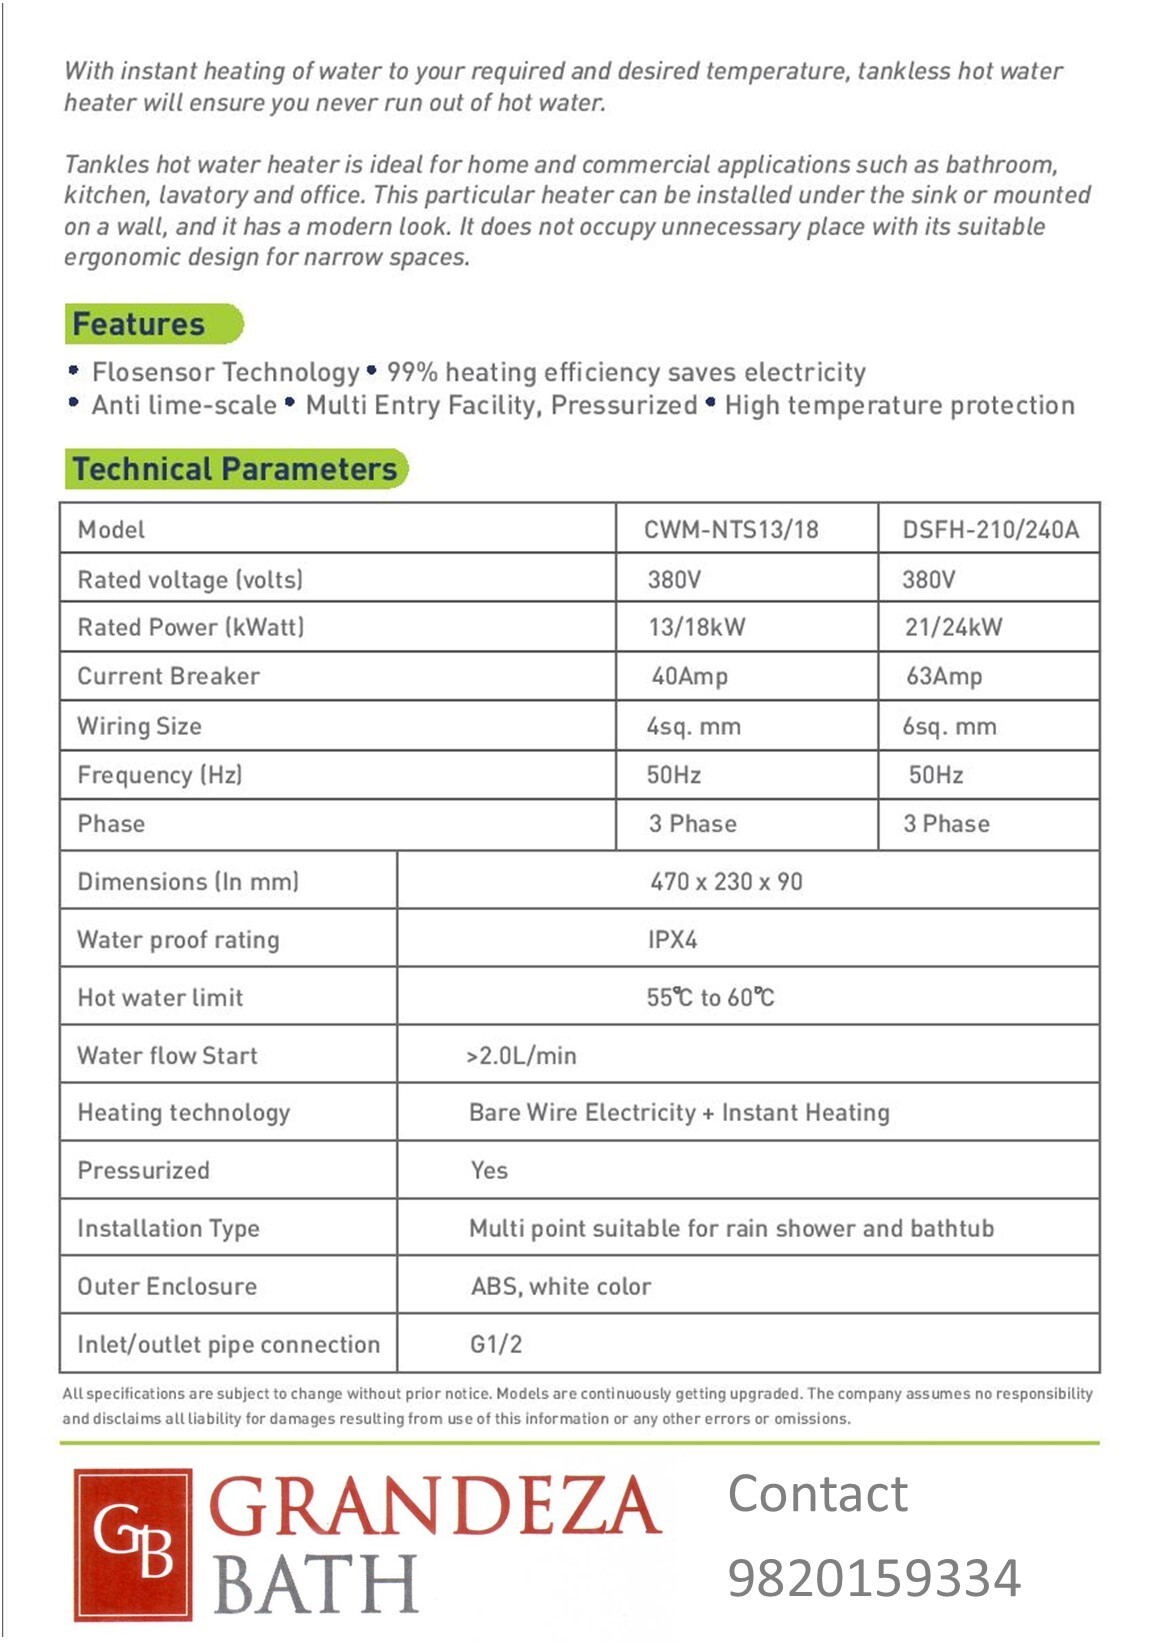 KETKO Online Water Heater DSF-13 KW